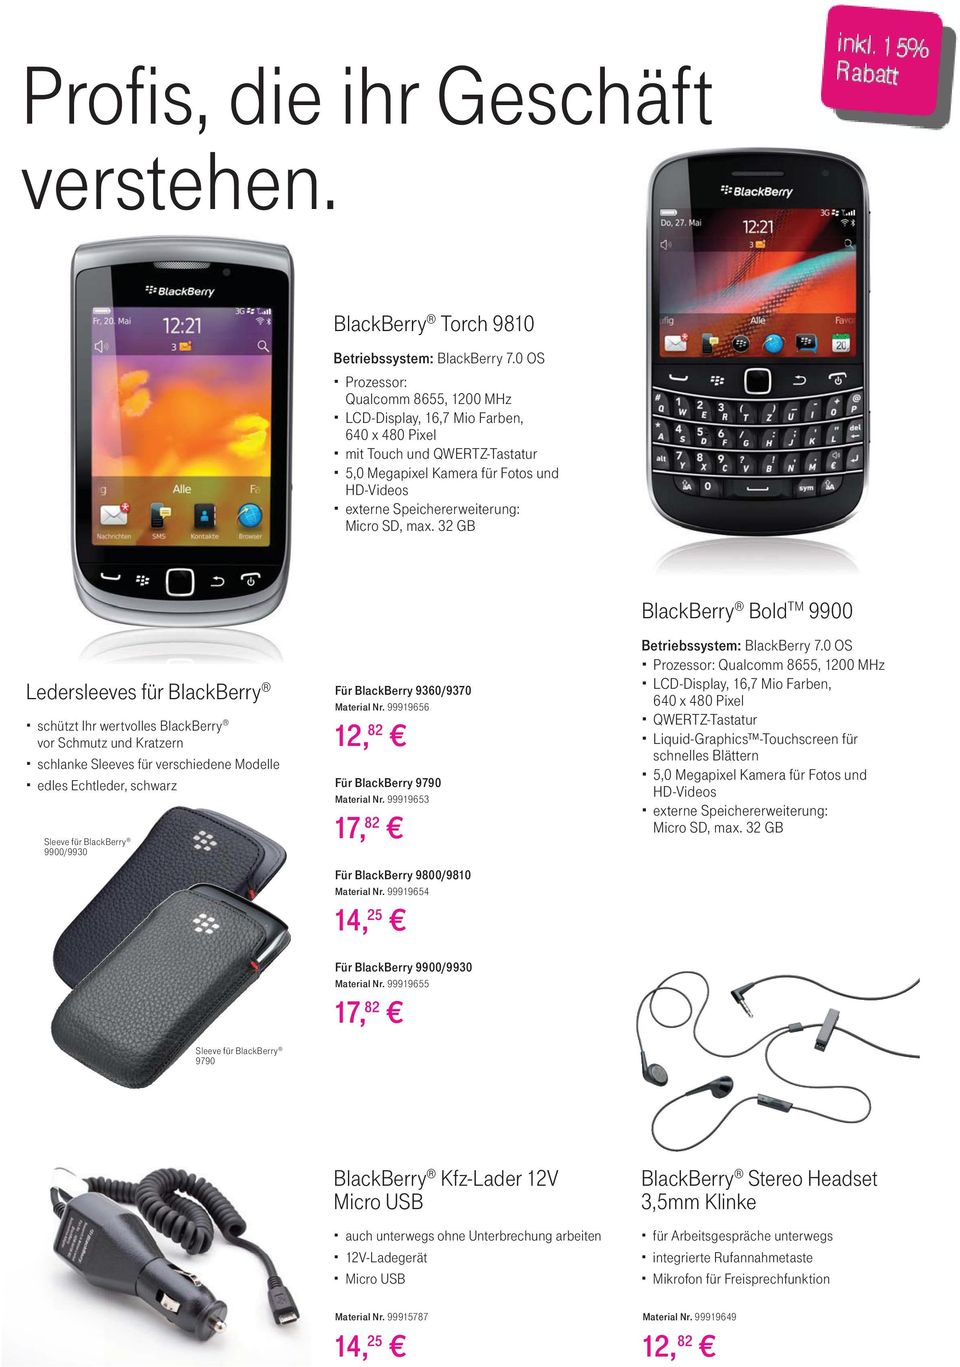 max. 32 GB BlackBerry Bold TM 9900 Ledersleeves für BlackBerry schützt Ihr wertvolles BlackBerry vor Schmutz und Kratzern schlanke Sleeves für verschiedene Modelle edles Echtleder, schwarz Sleeve für